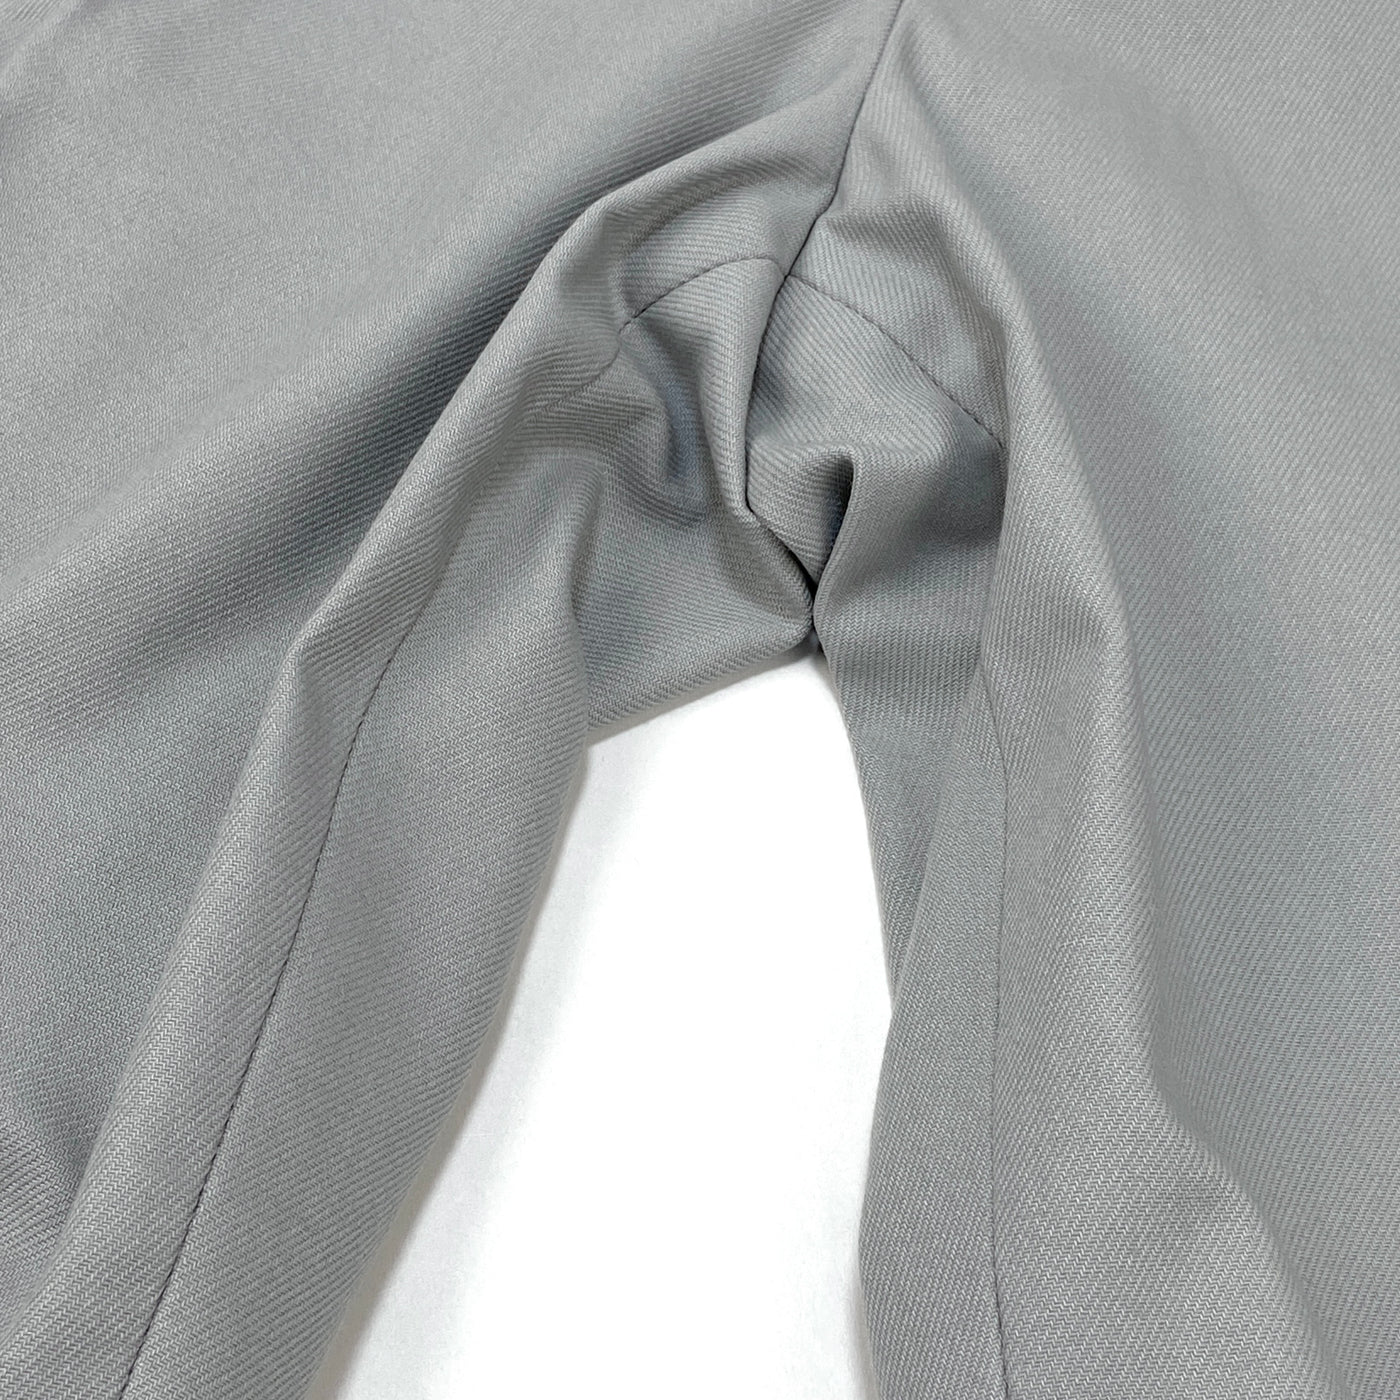 2019SS suit pants P/N 07.05.15 L